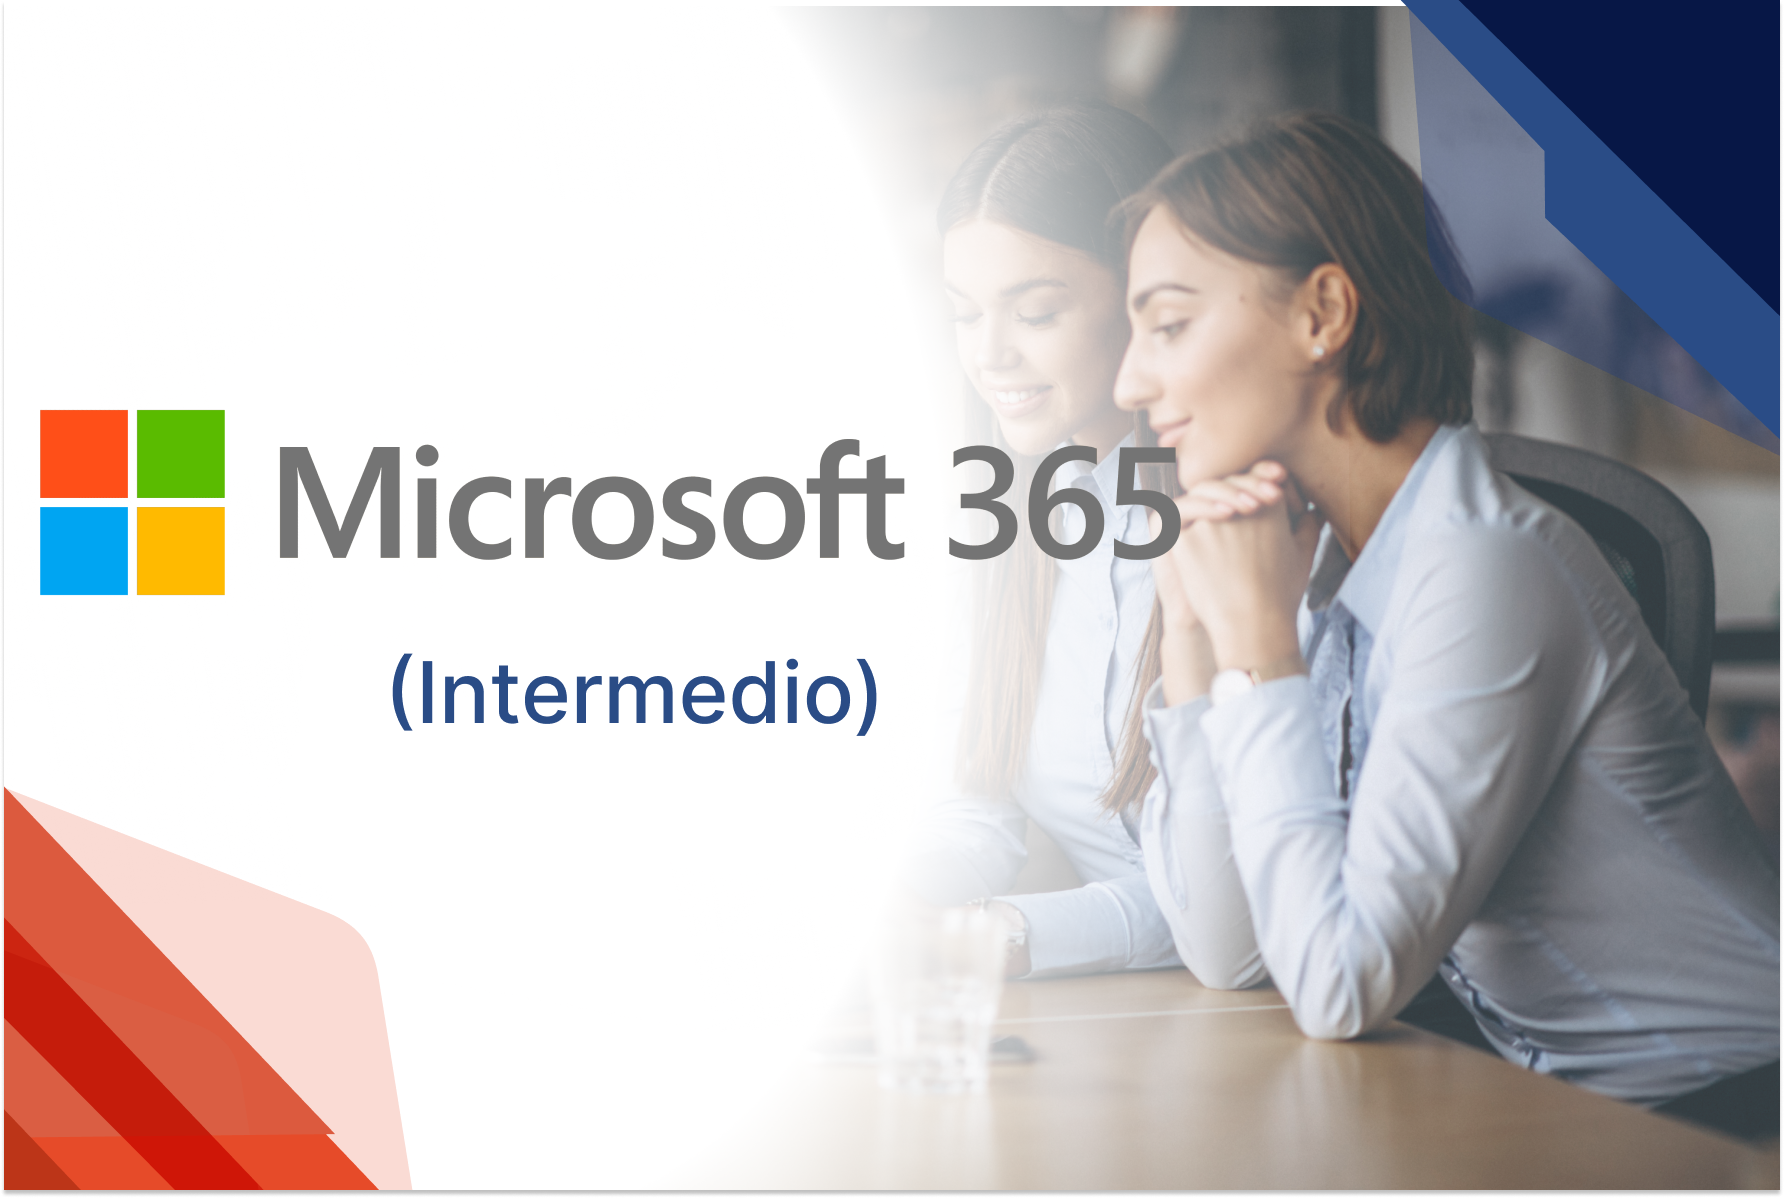 Uso y aprovechamiento de Office 365 en la empresa (Intermedio)